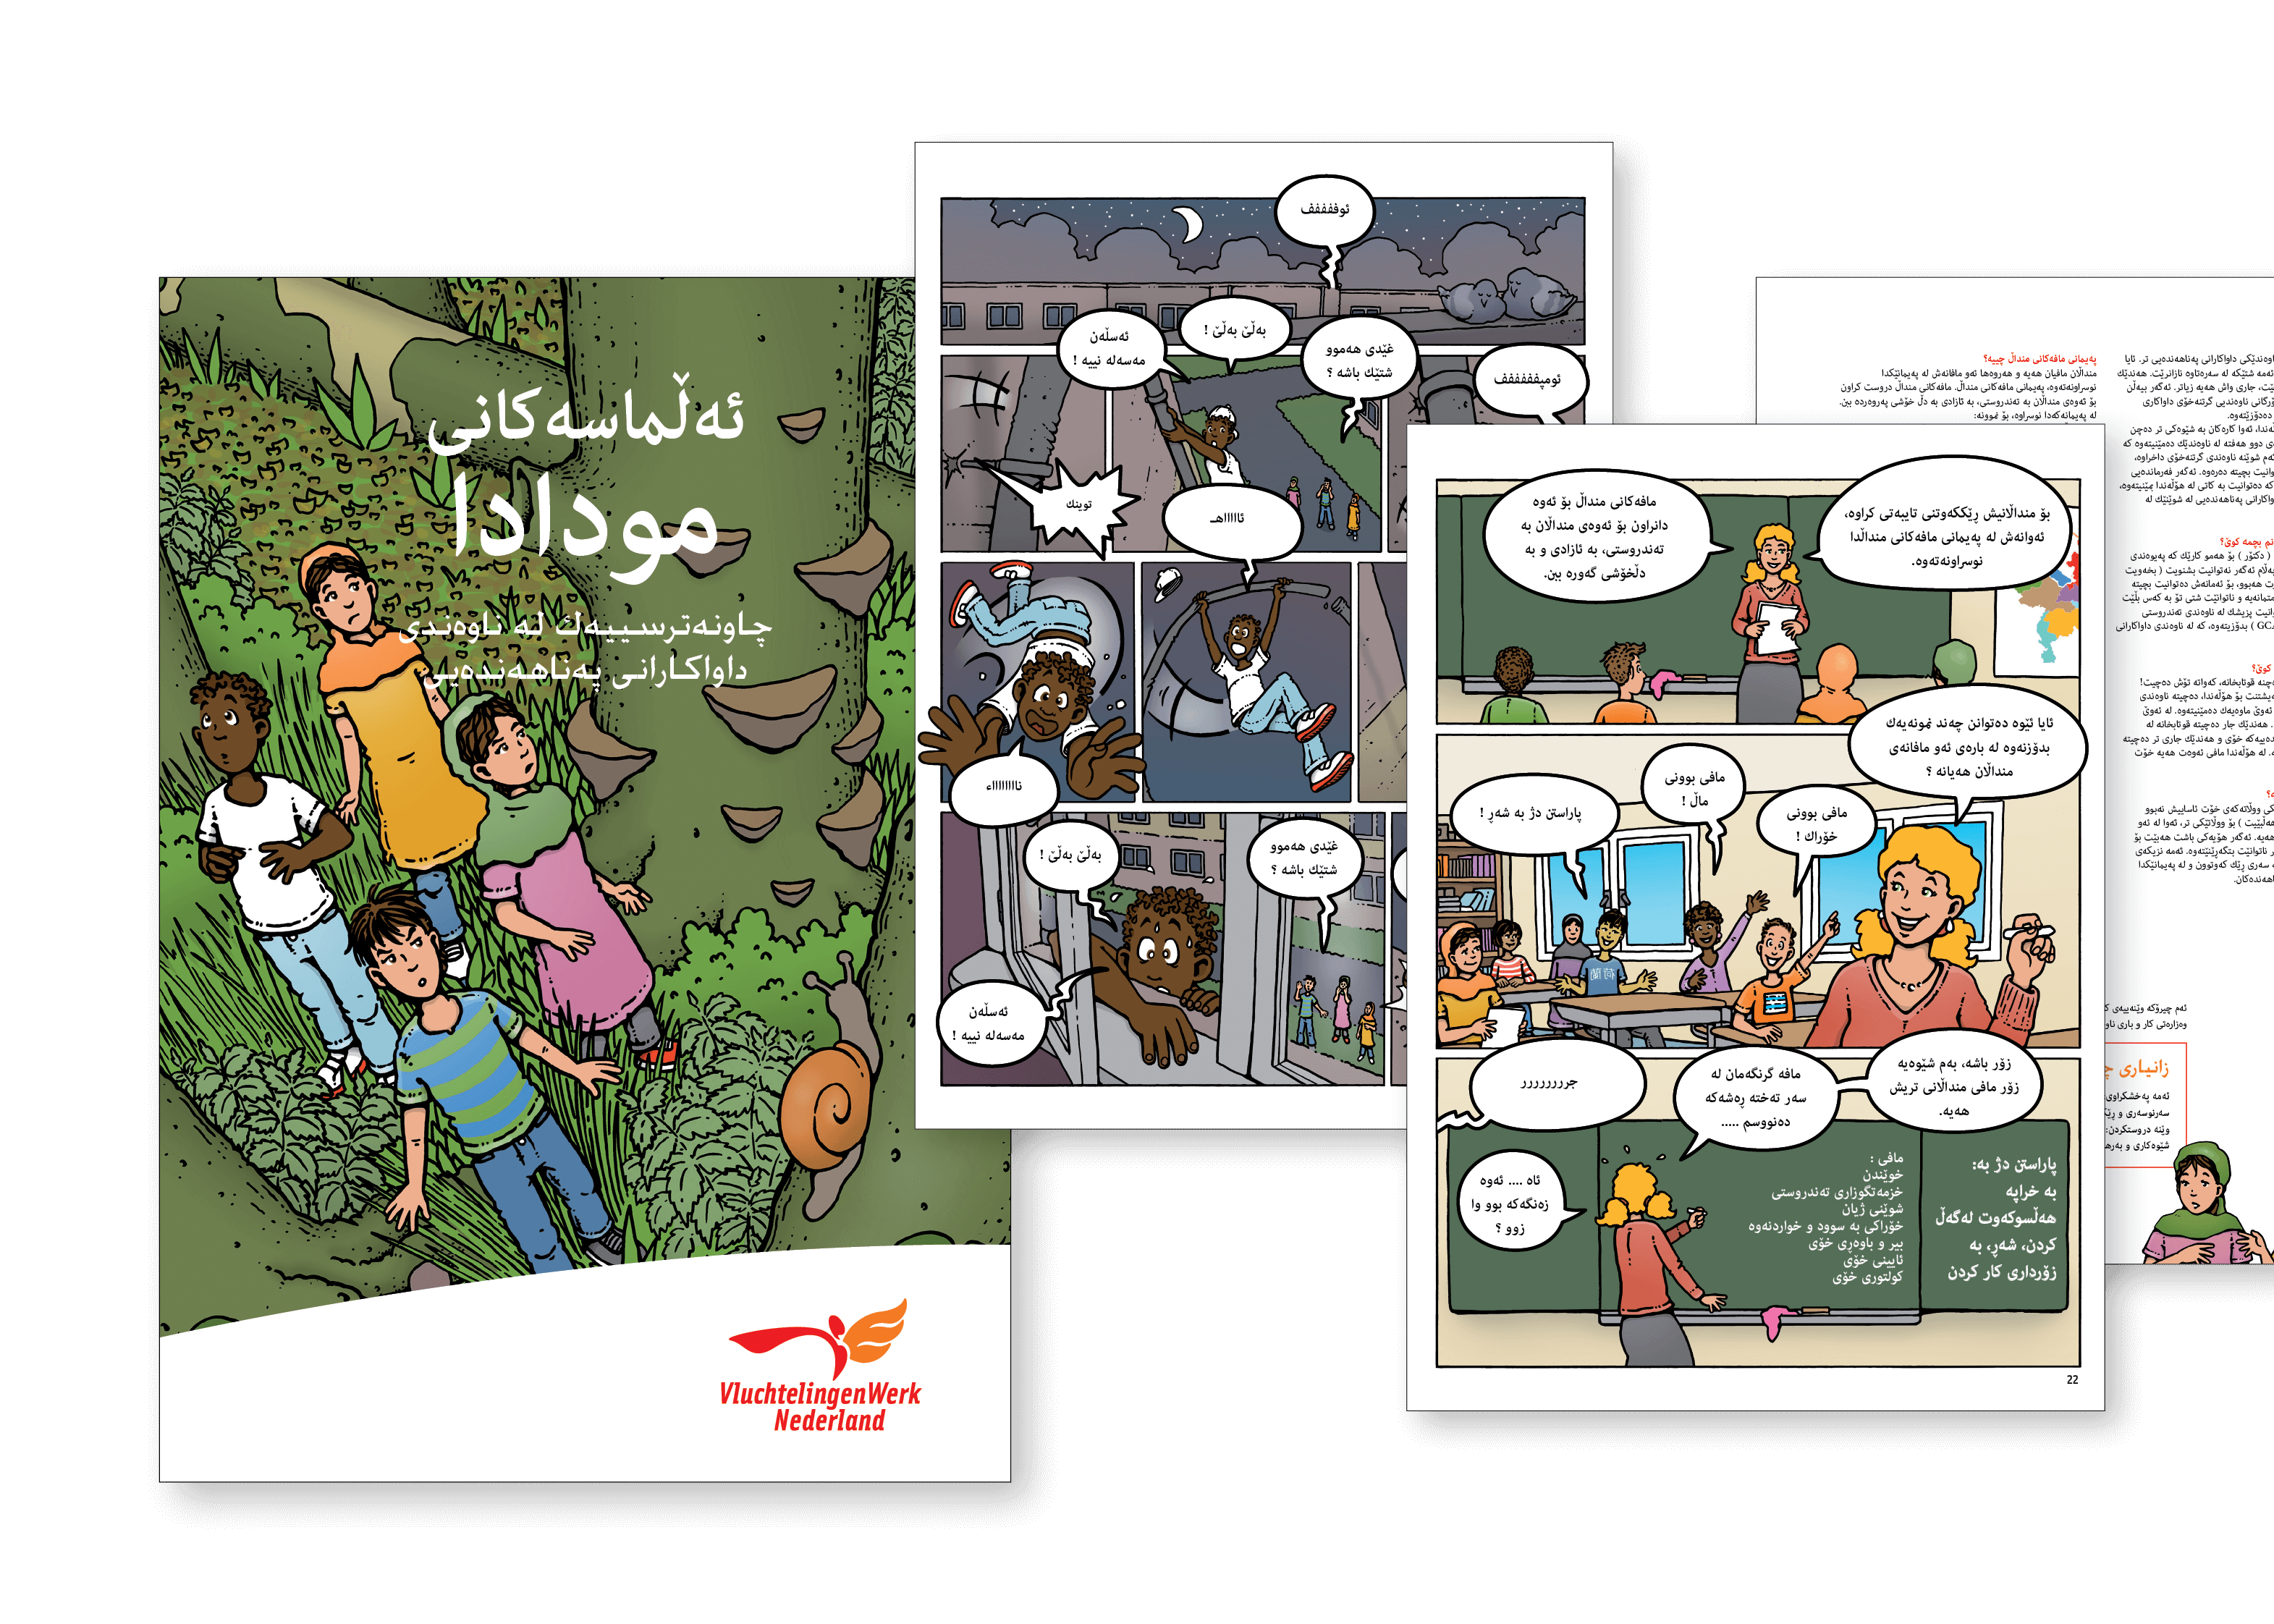 Stripboek voor Vluchtelingenwerk Nefderland in Sorani / Koerdisch